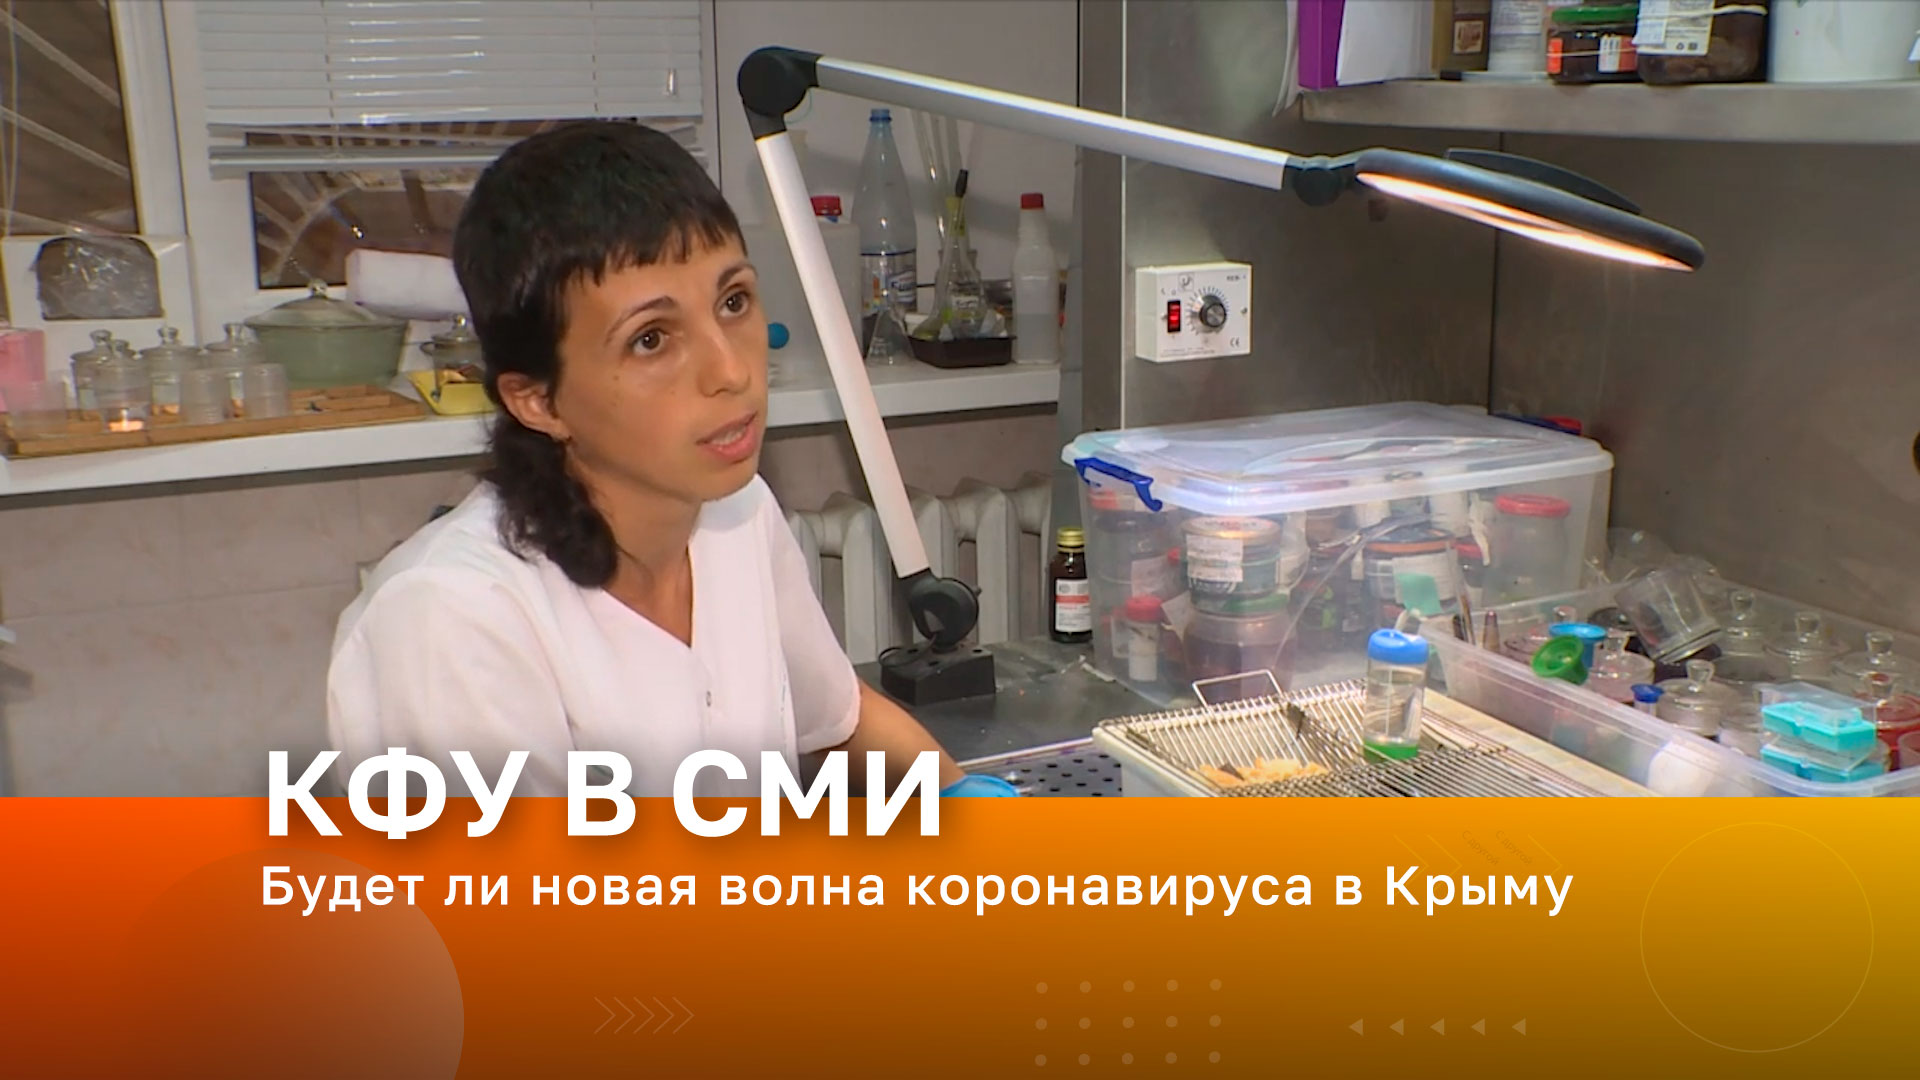 Будет ли новая волна коронавируса в Крыму